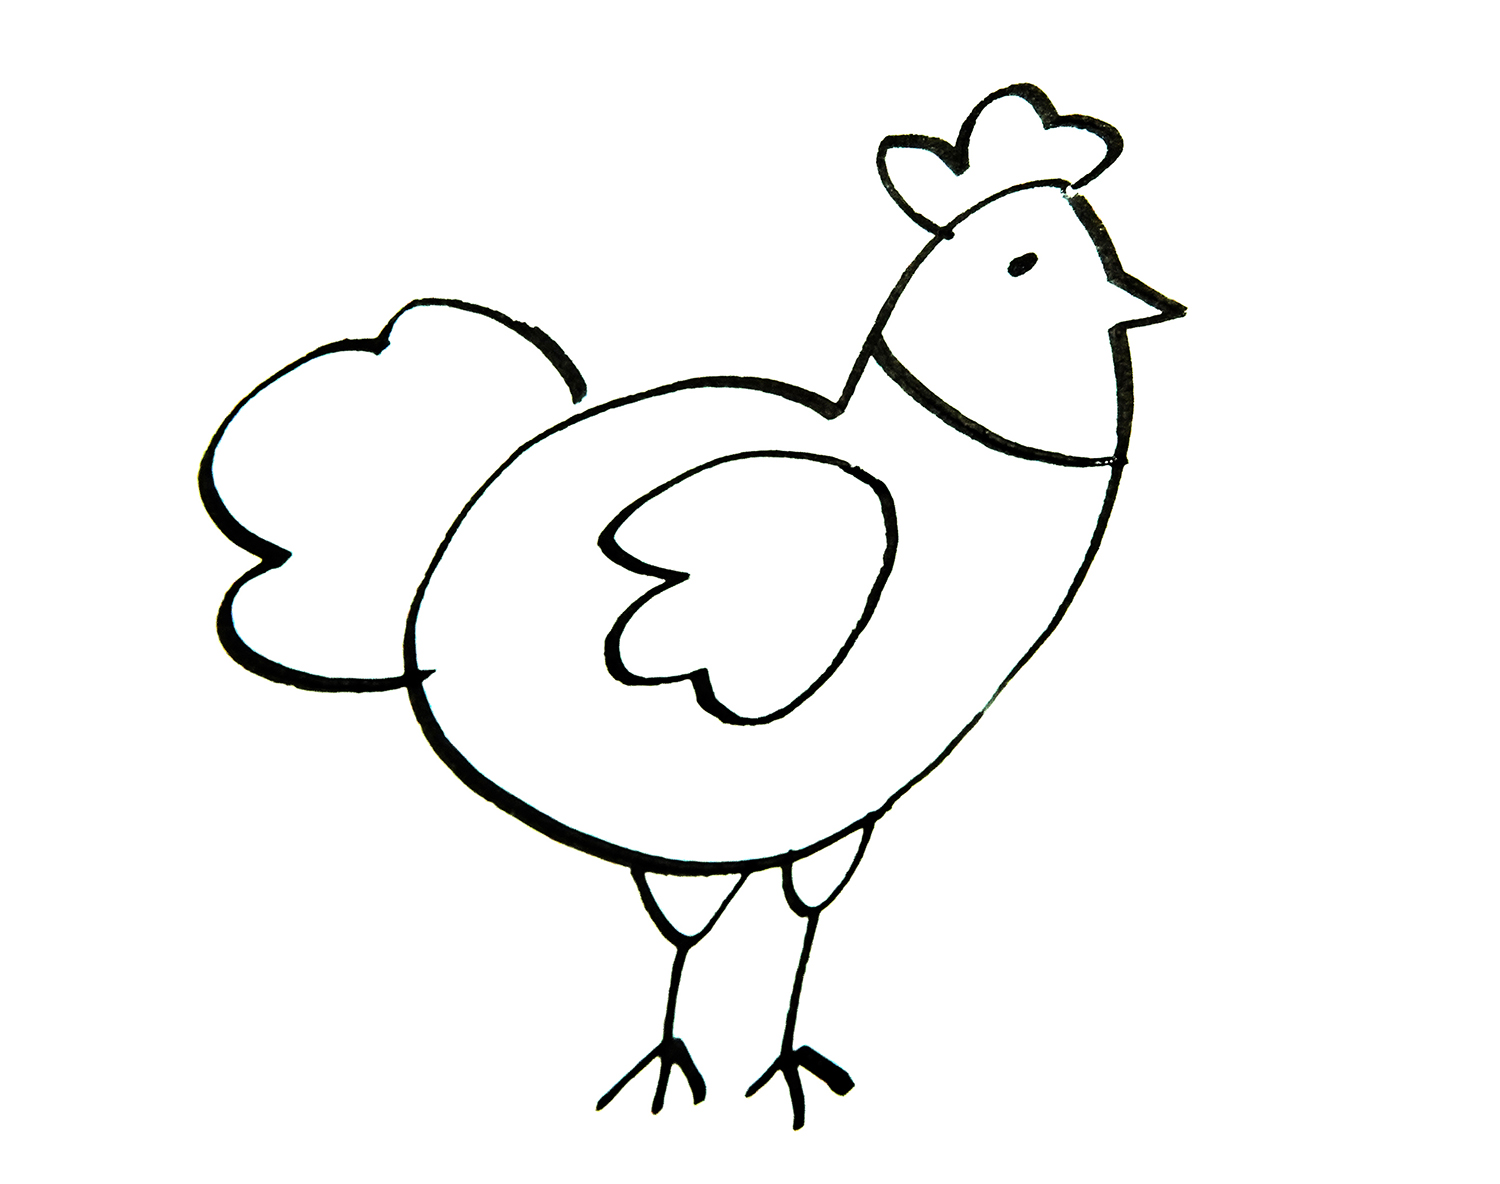 公鸡怎么画简笔画图片鸡的画法公鸡简笔画图片大全可爱图片大全